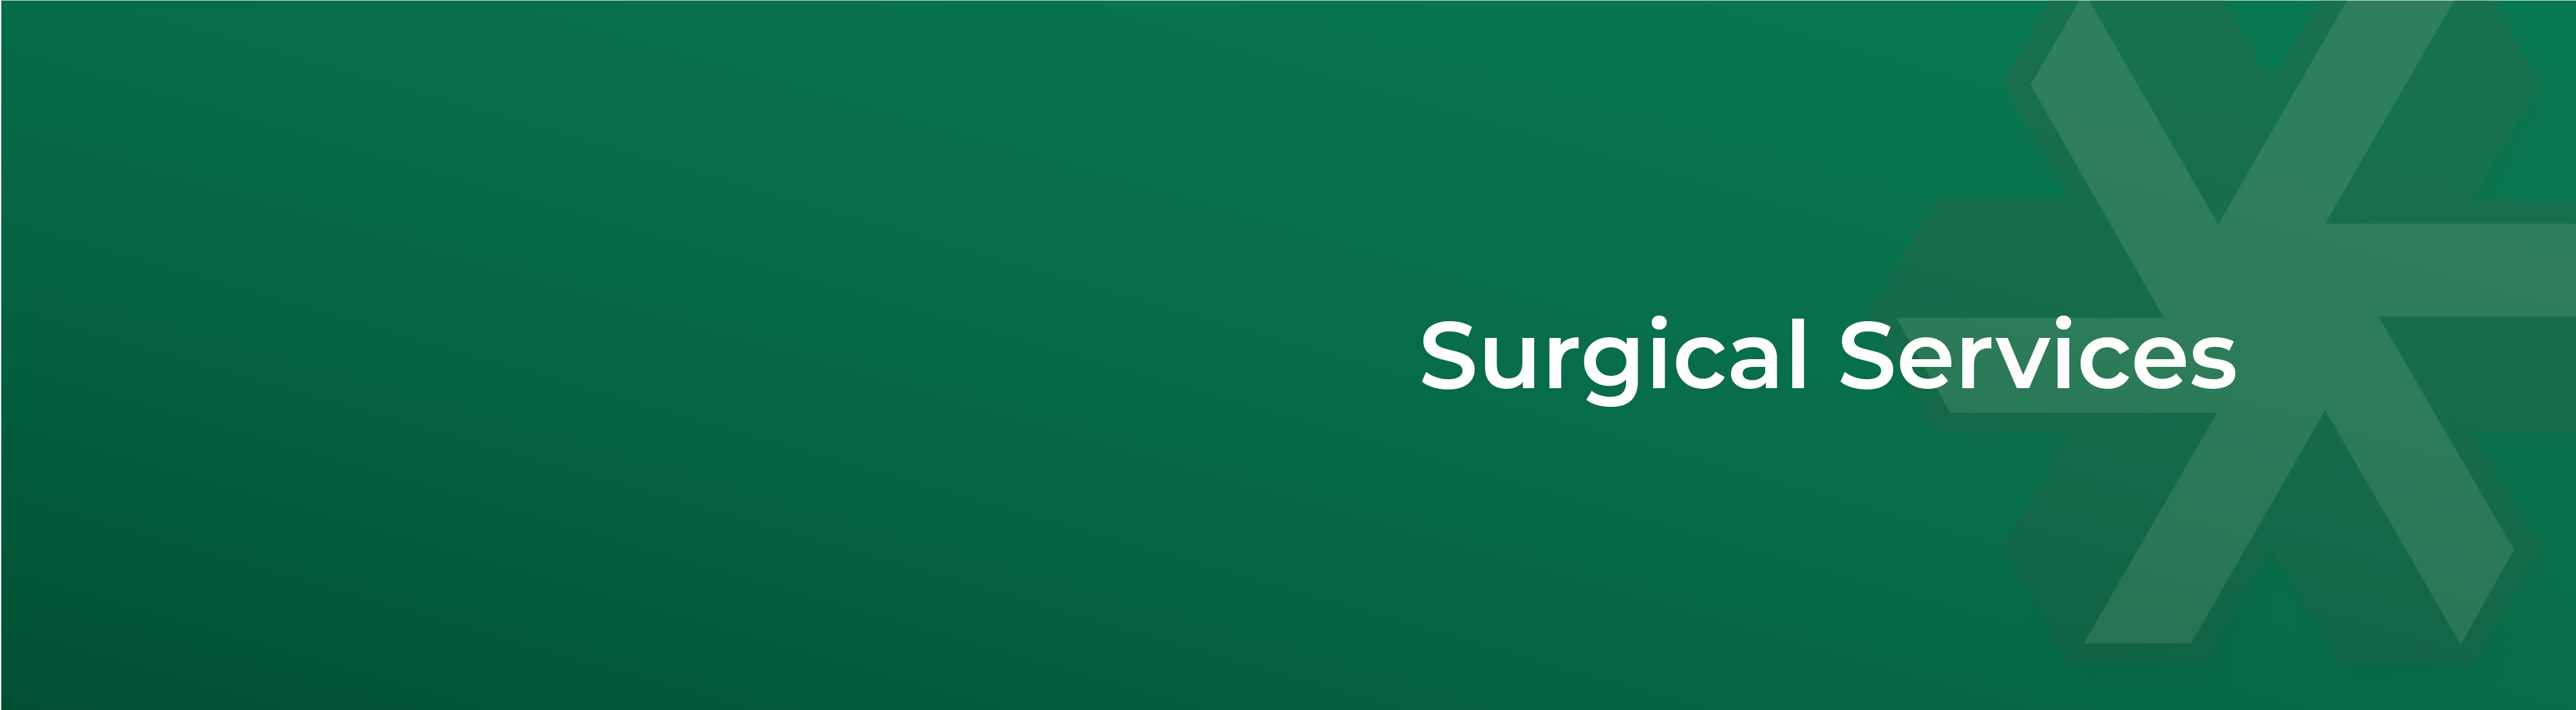 SurgicalServices-Header-01